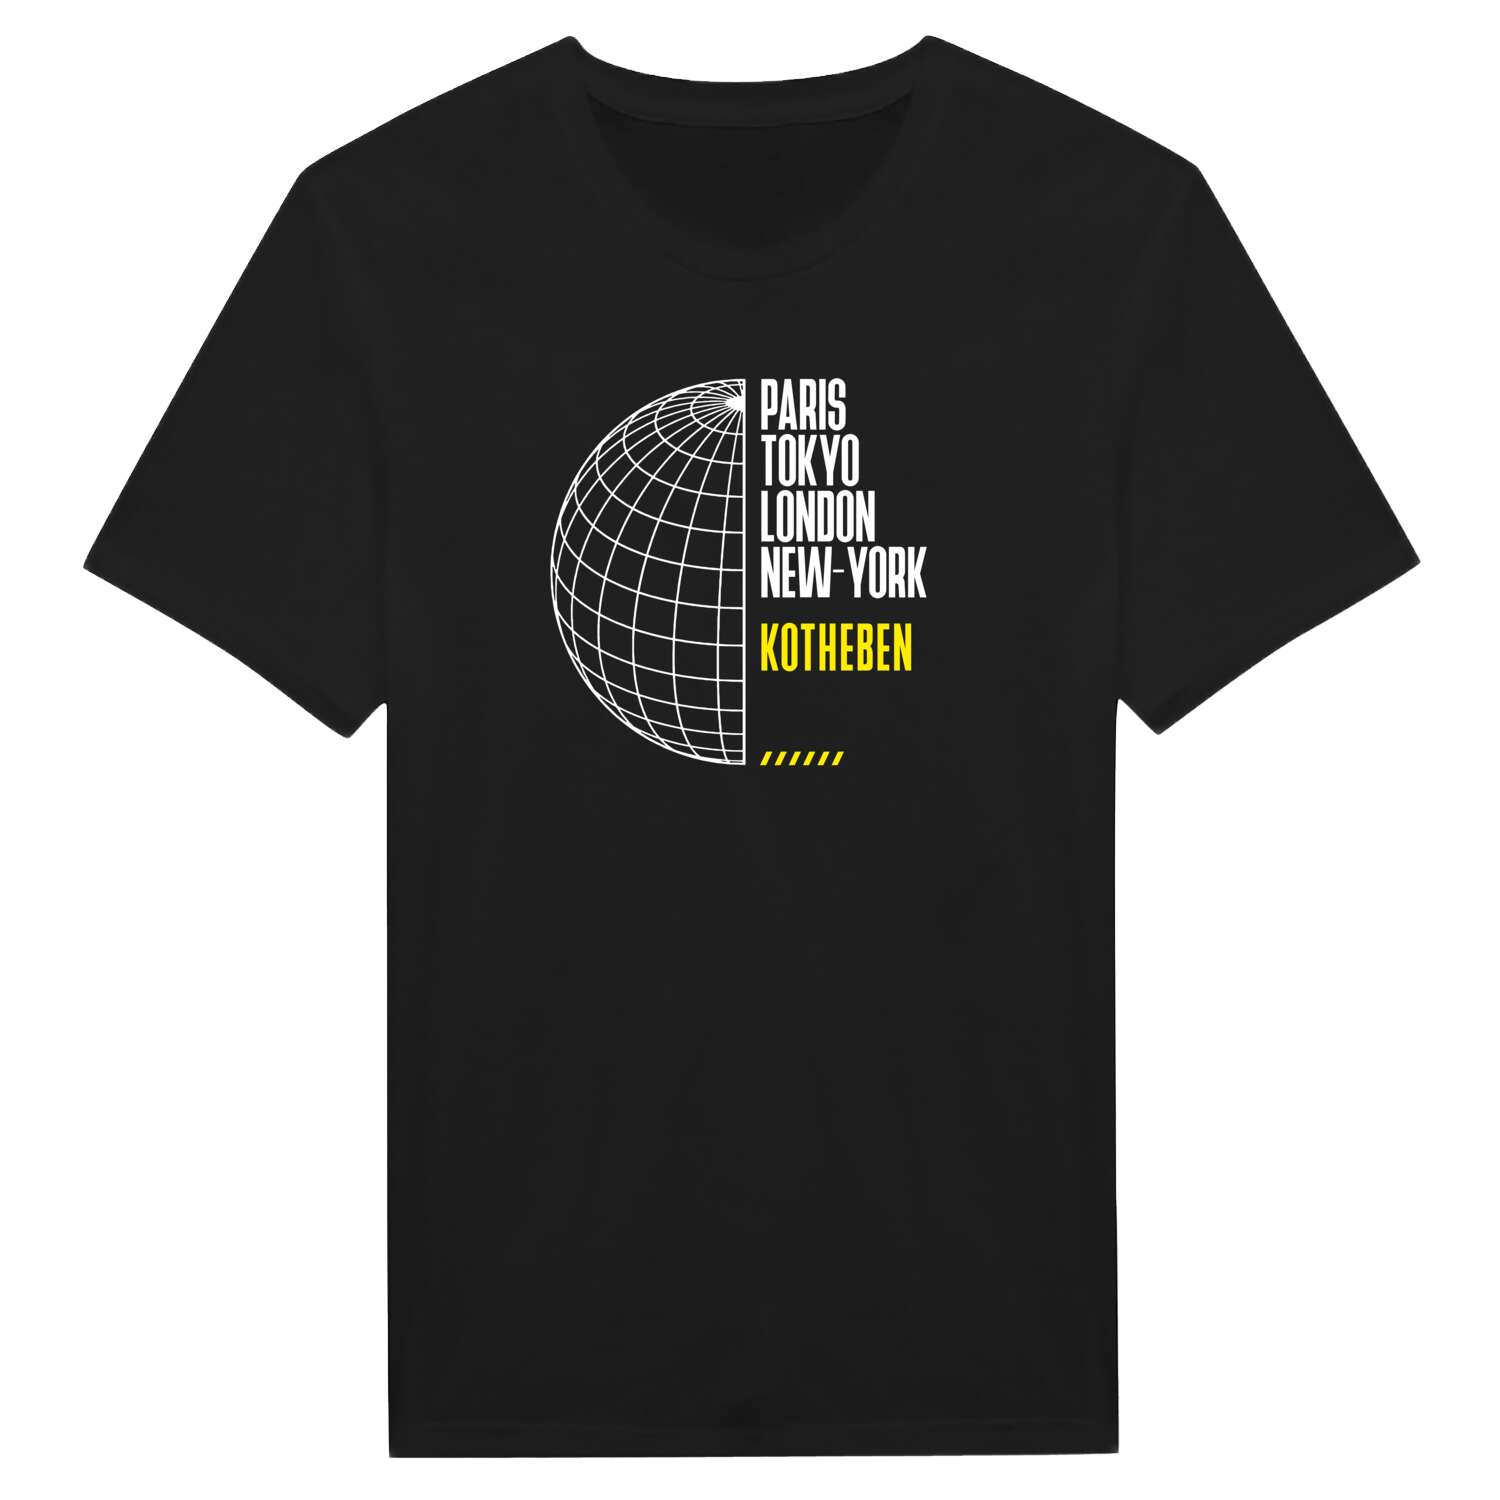 Kotheben T-Shirt »Paris Tokyo London«